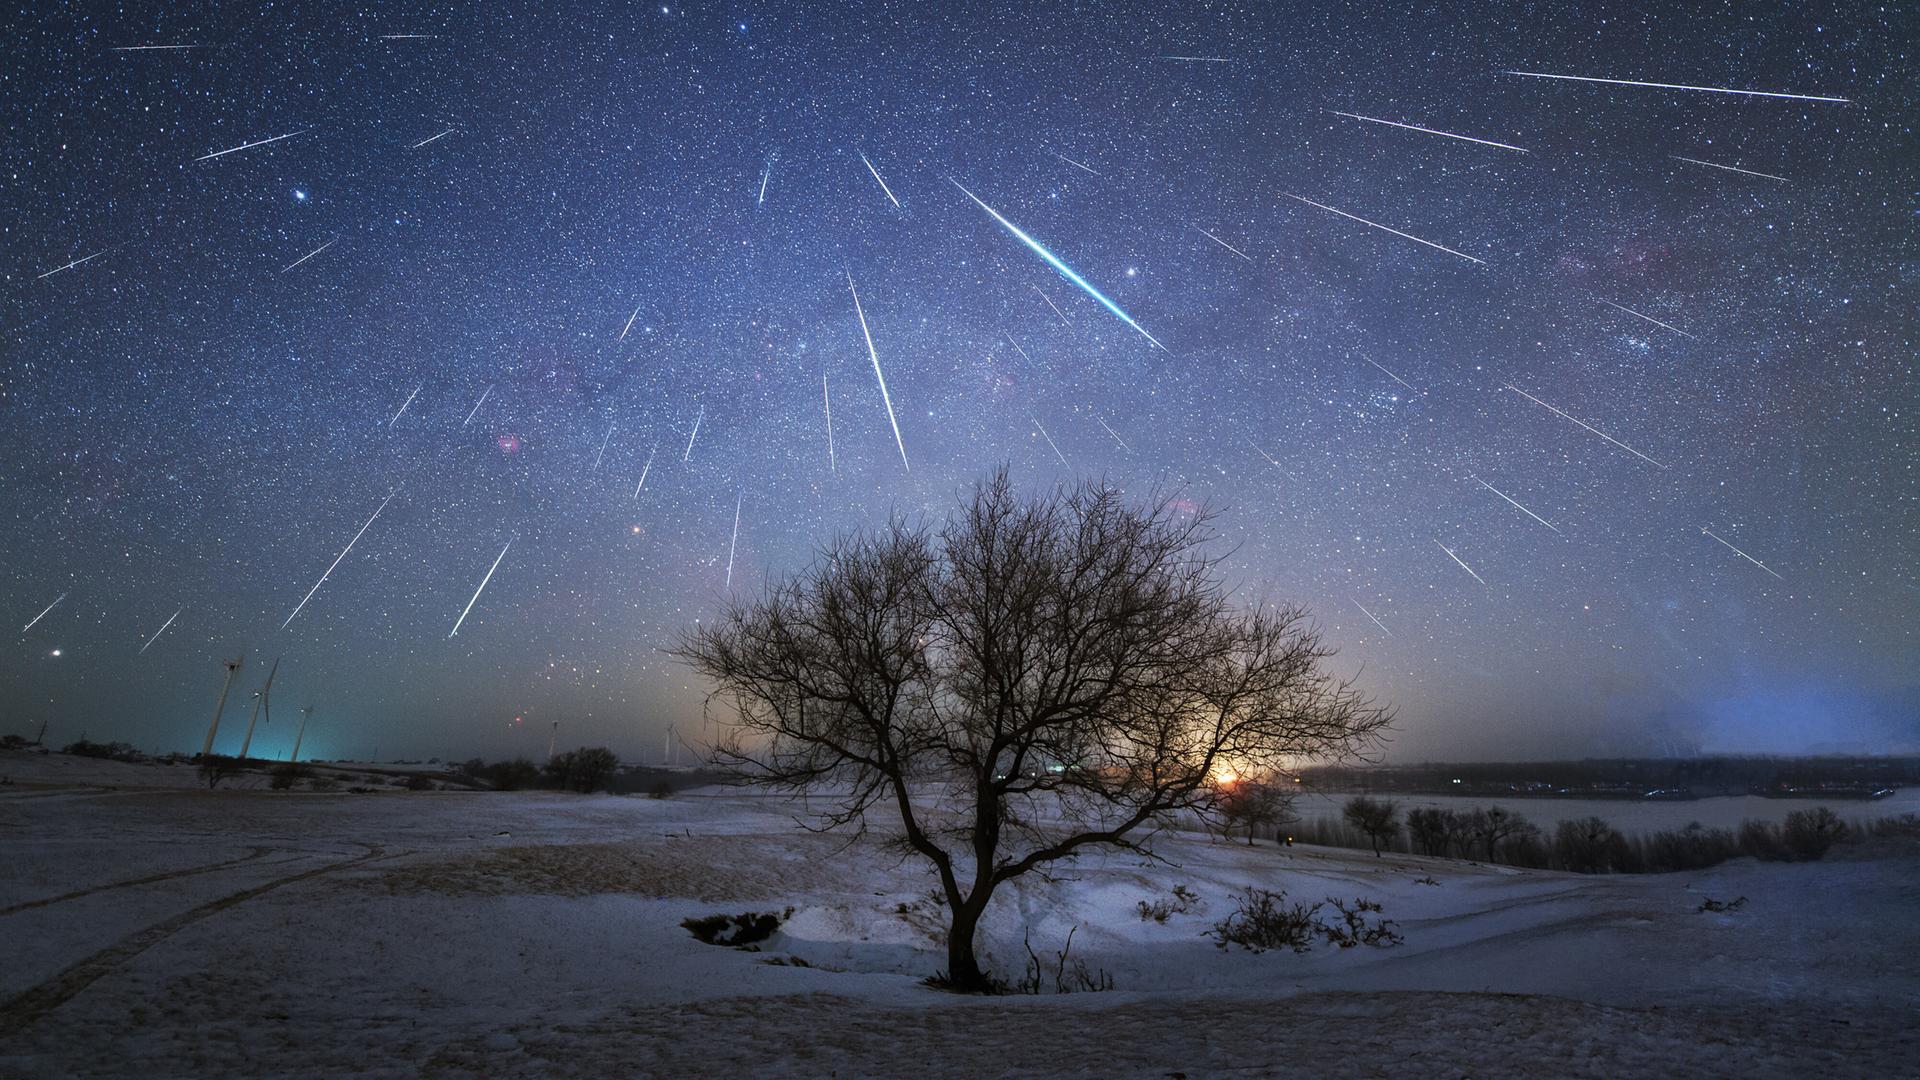 Ein Schwarm von Sternschnuppen am nächtlichen Himmel über einer Landschaft mit einem frei stehenden Baum